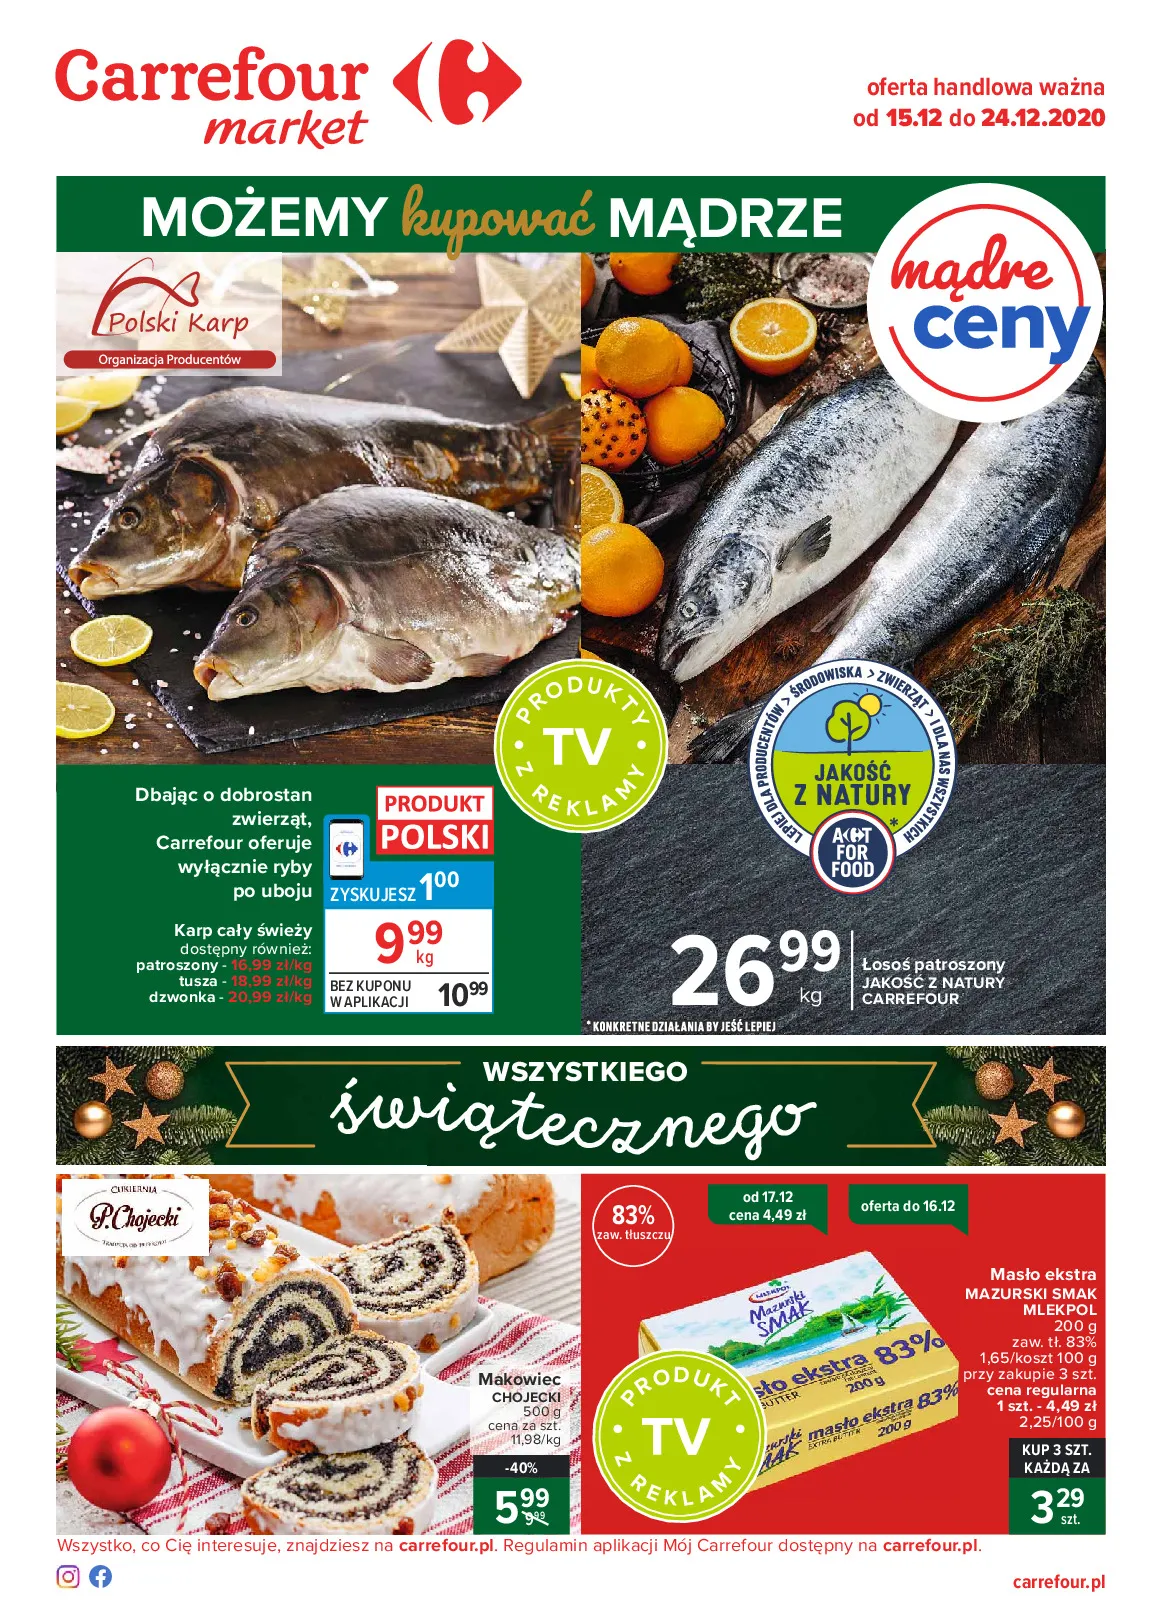 Gazetka promocyjna Carrefour - Carrefour Market - ważna 15.12 do 24.12.2020 - strona 1